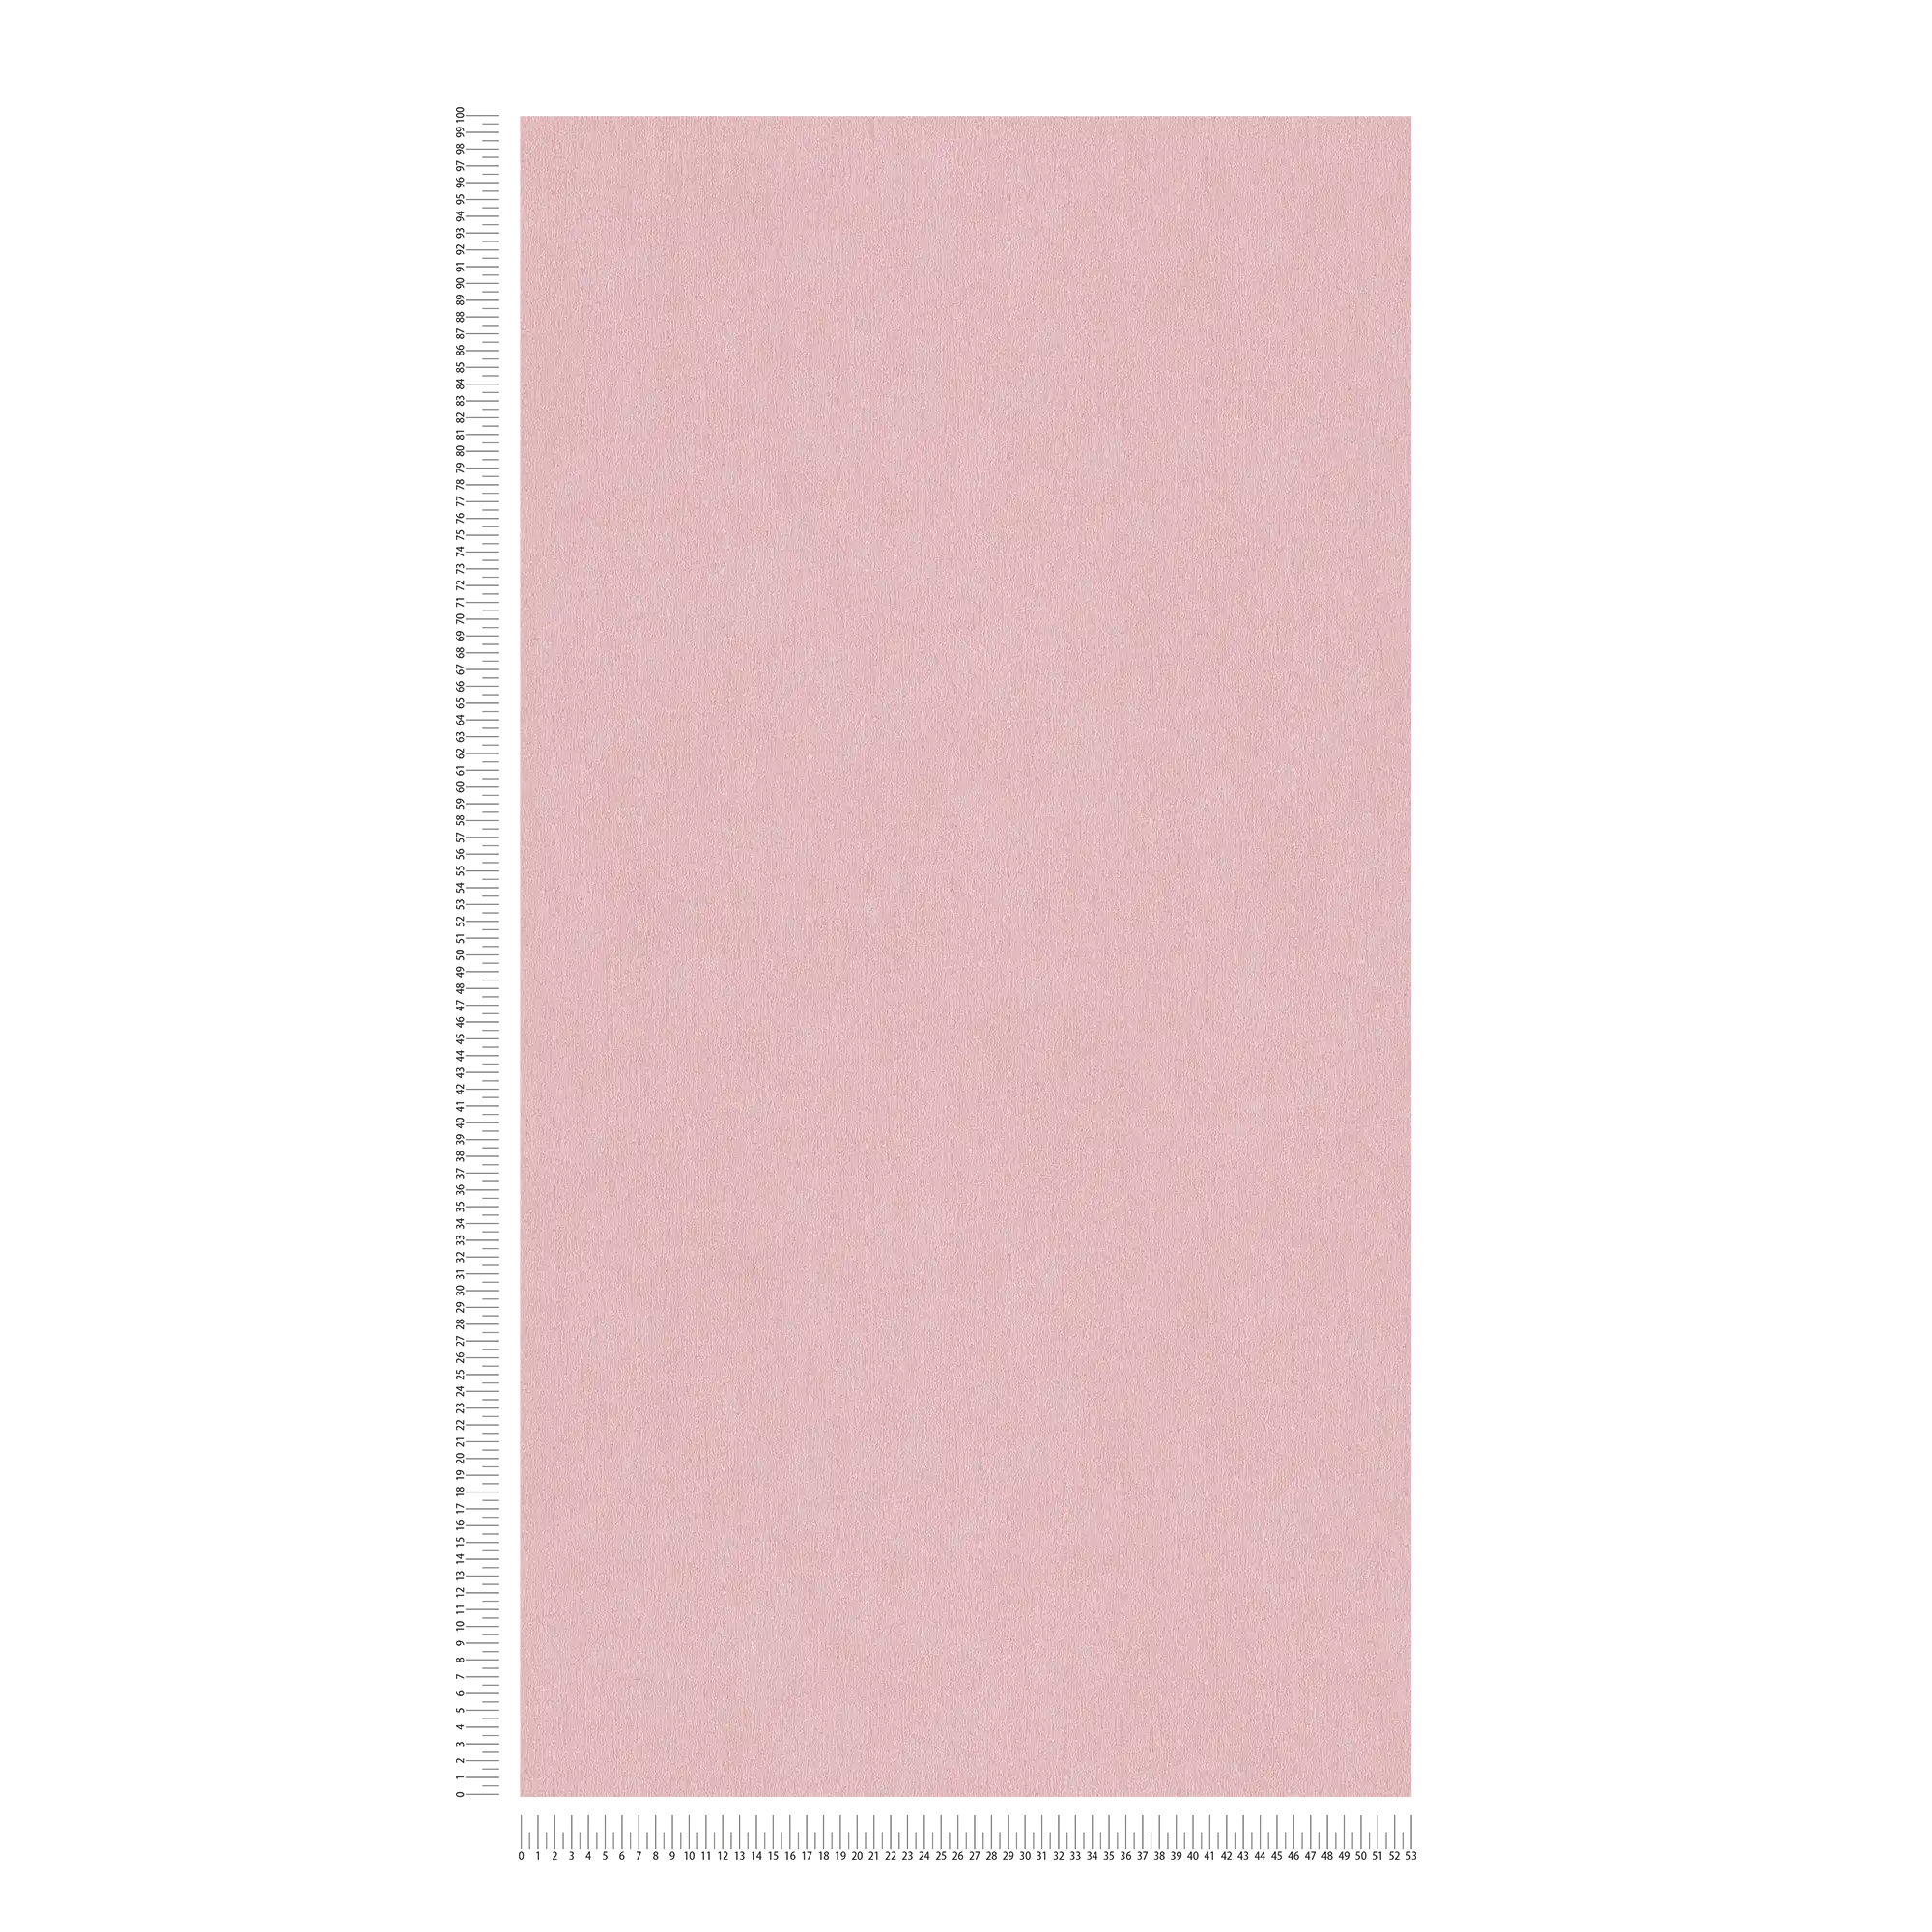             Roze behang effen met kleur arceringen
        